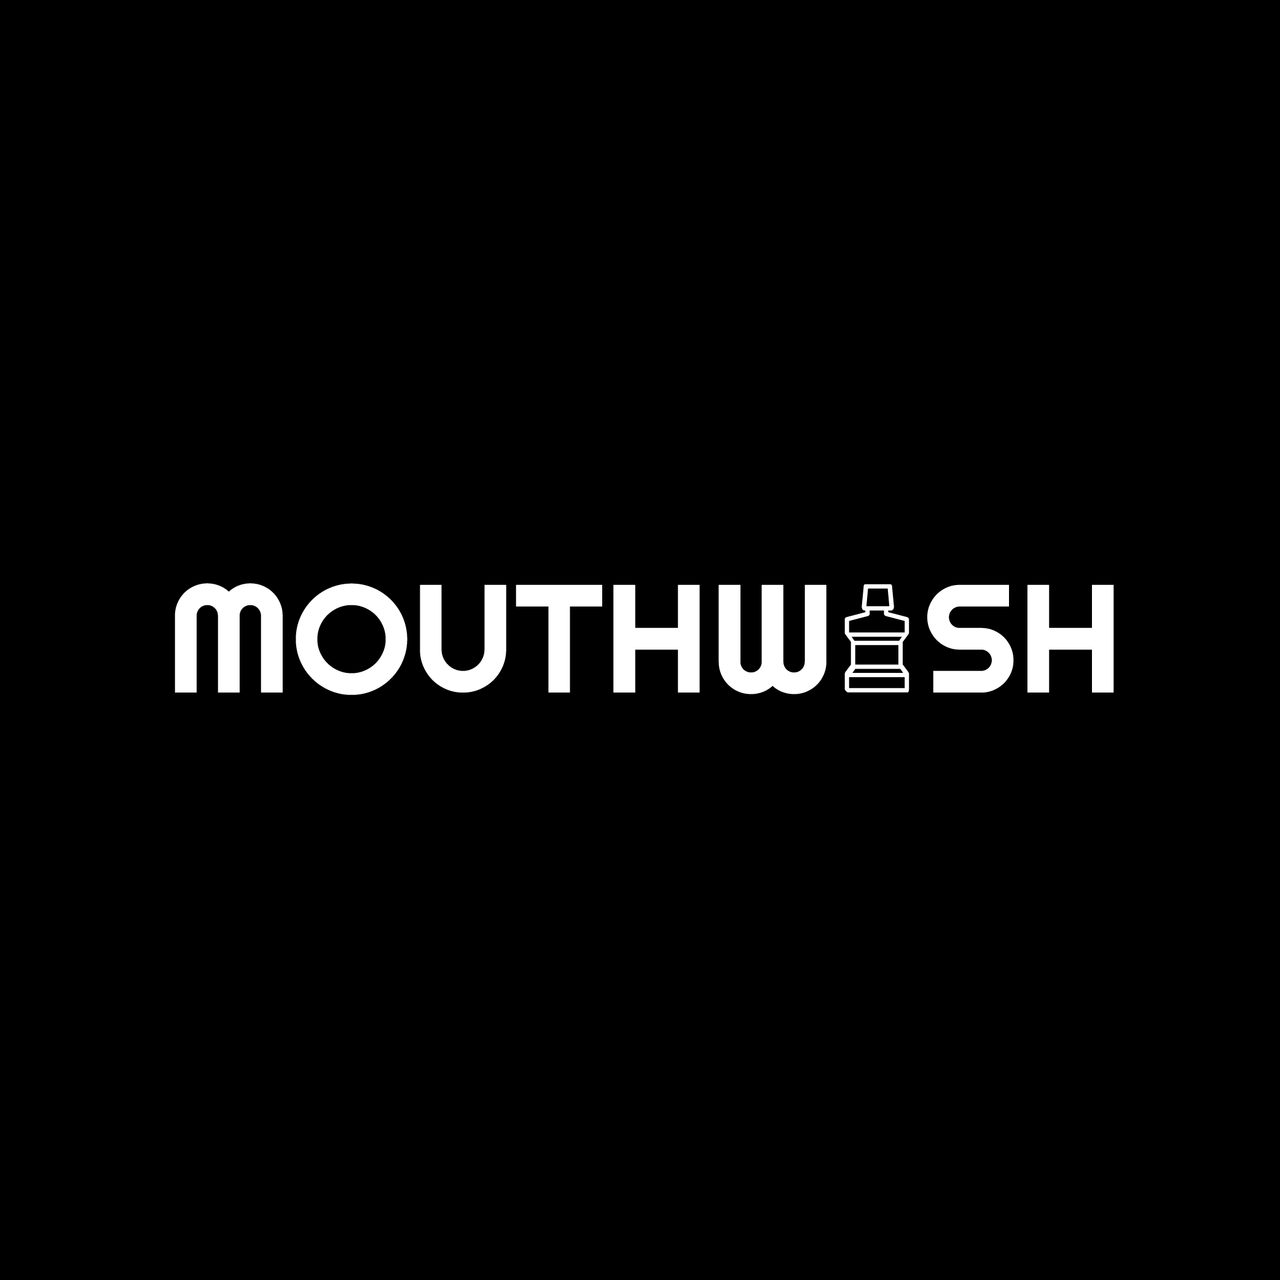 Mouthwash Show